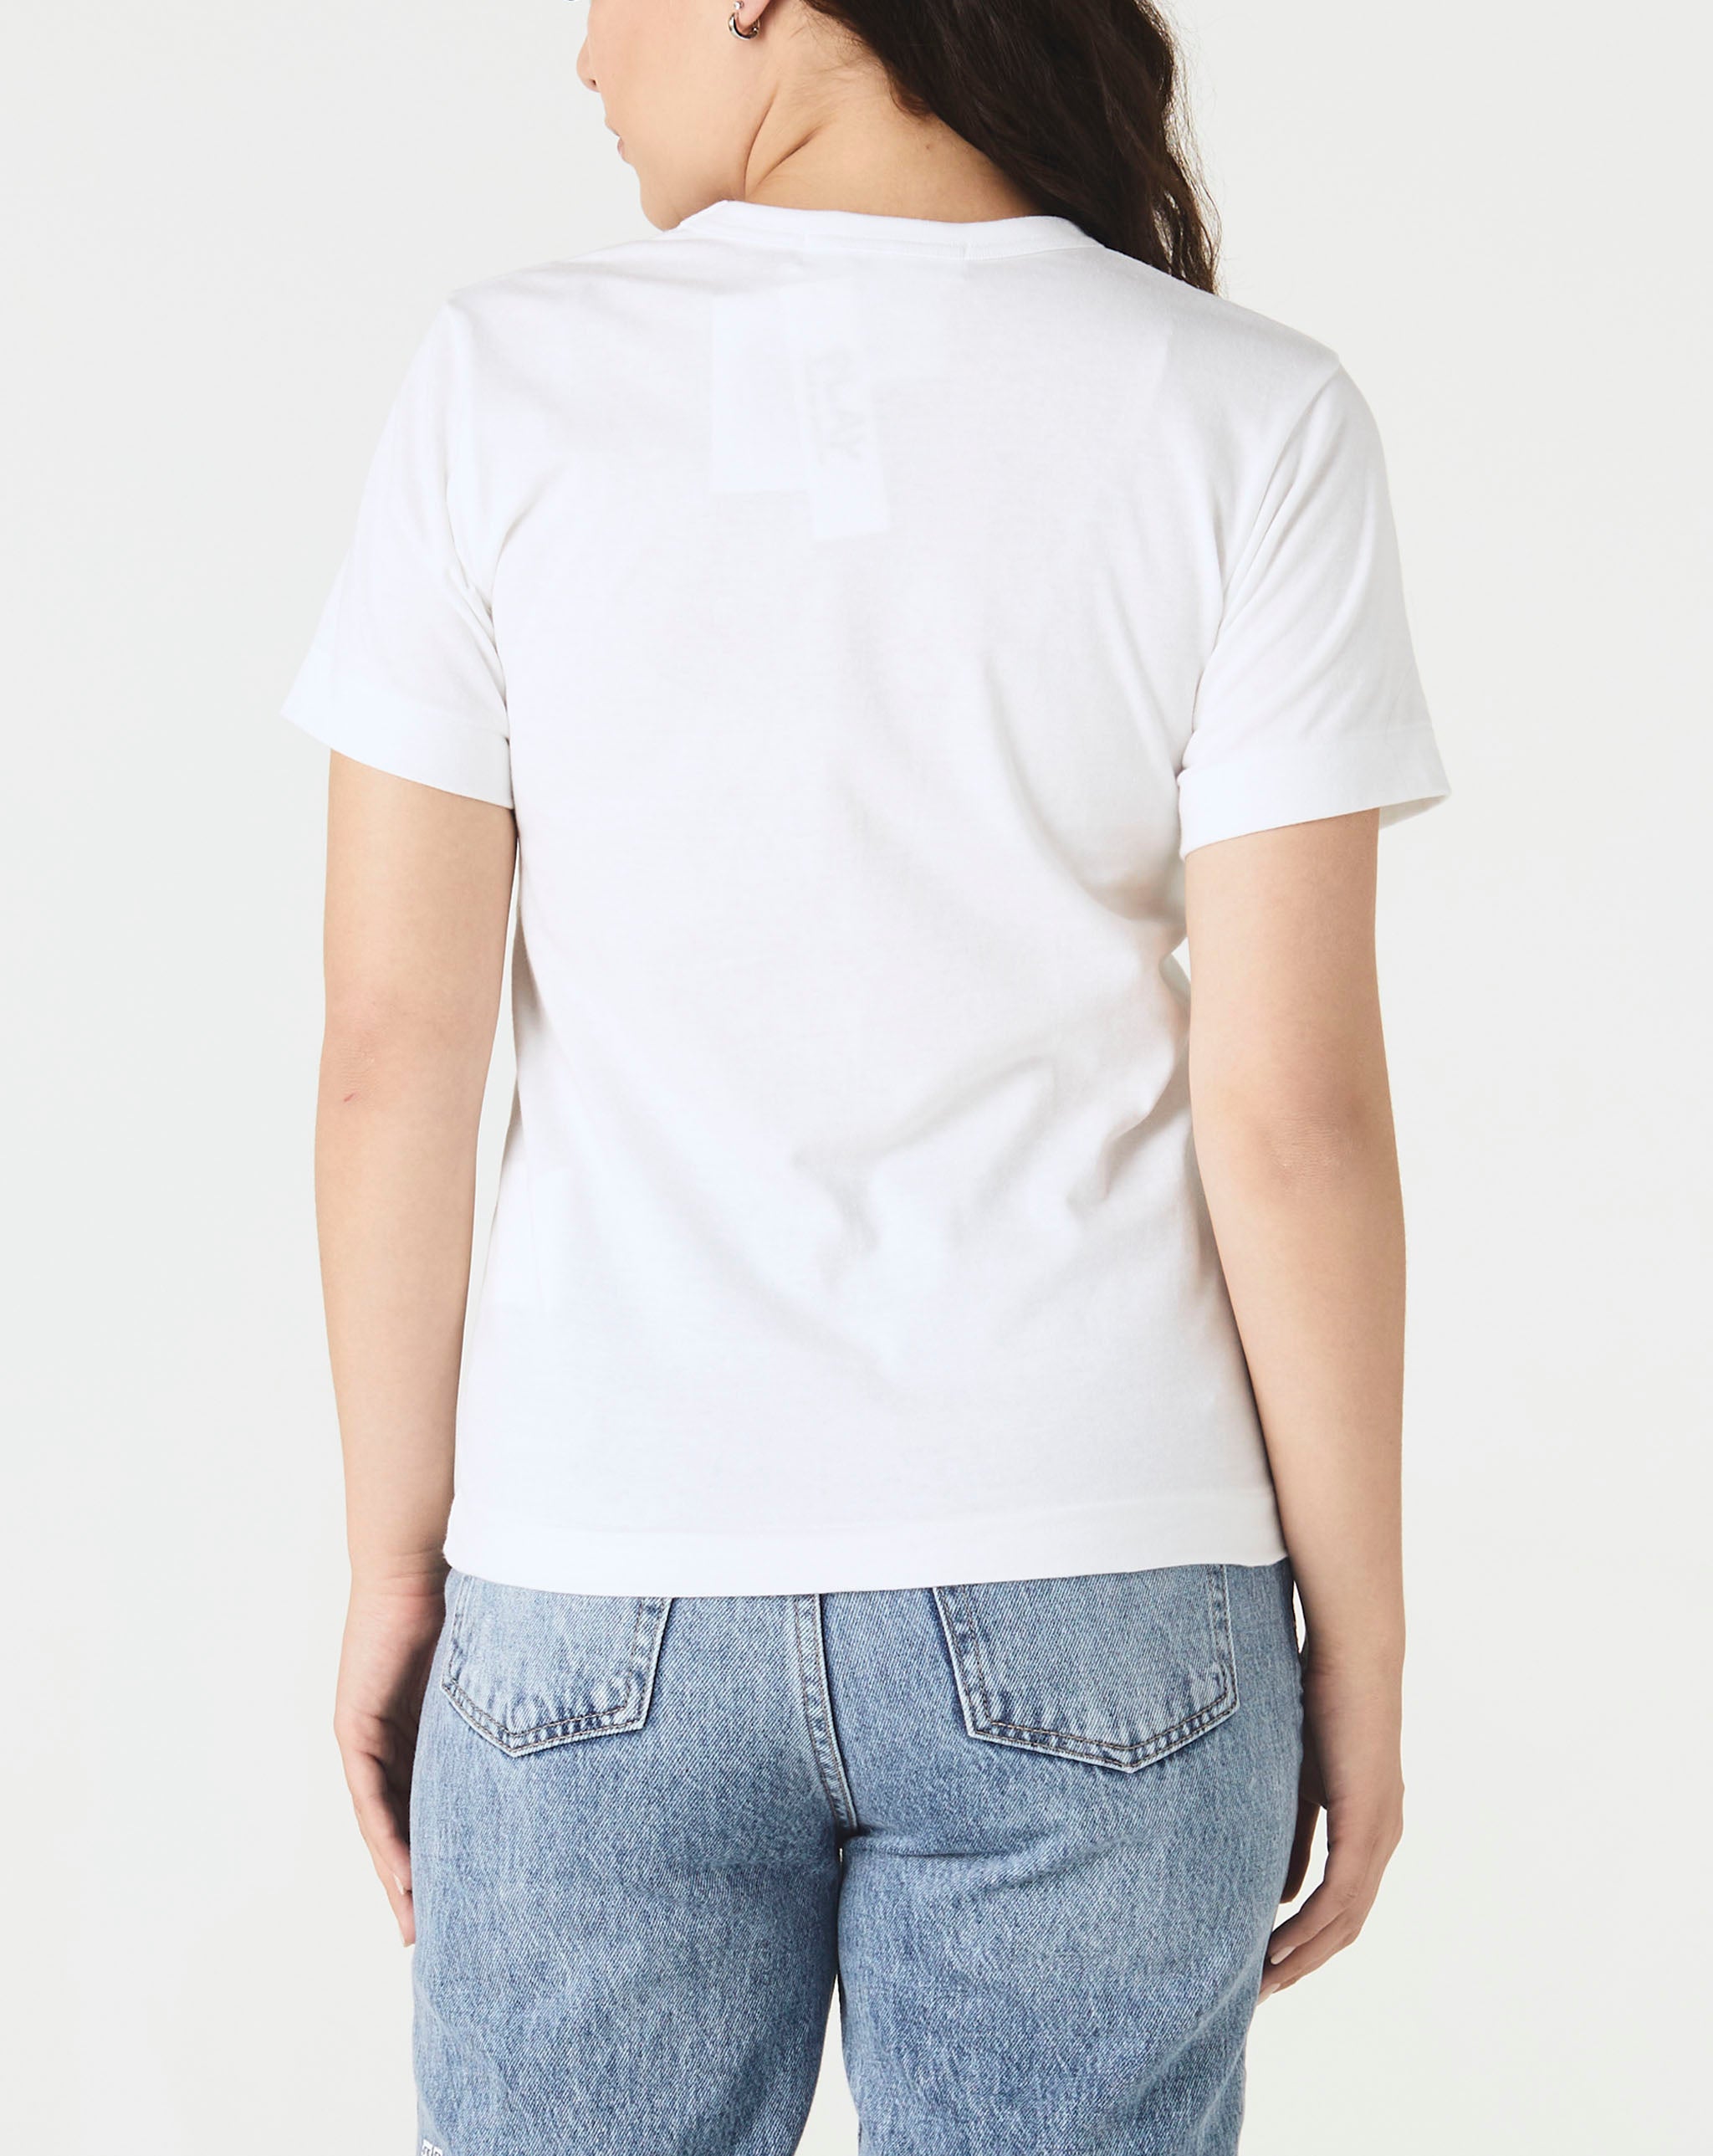 Womens Play Logo T-Shirt Women's Double Camo Heart T-Shirt  - Cheap Urlfreeze Jordan outlet